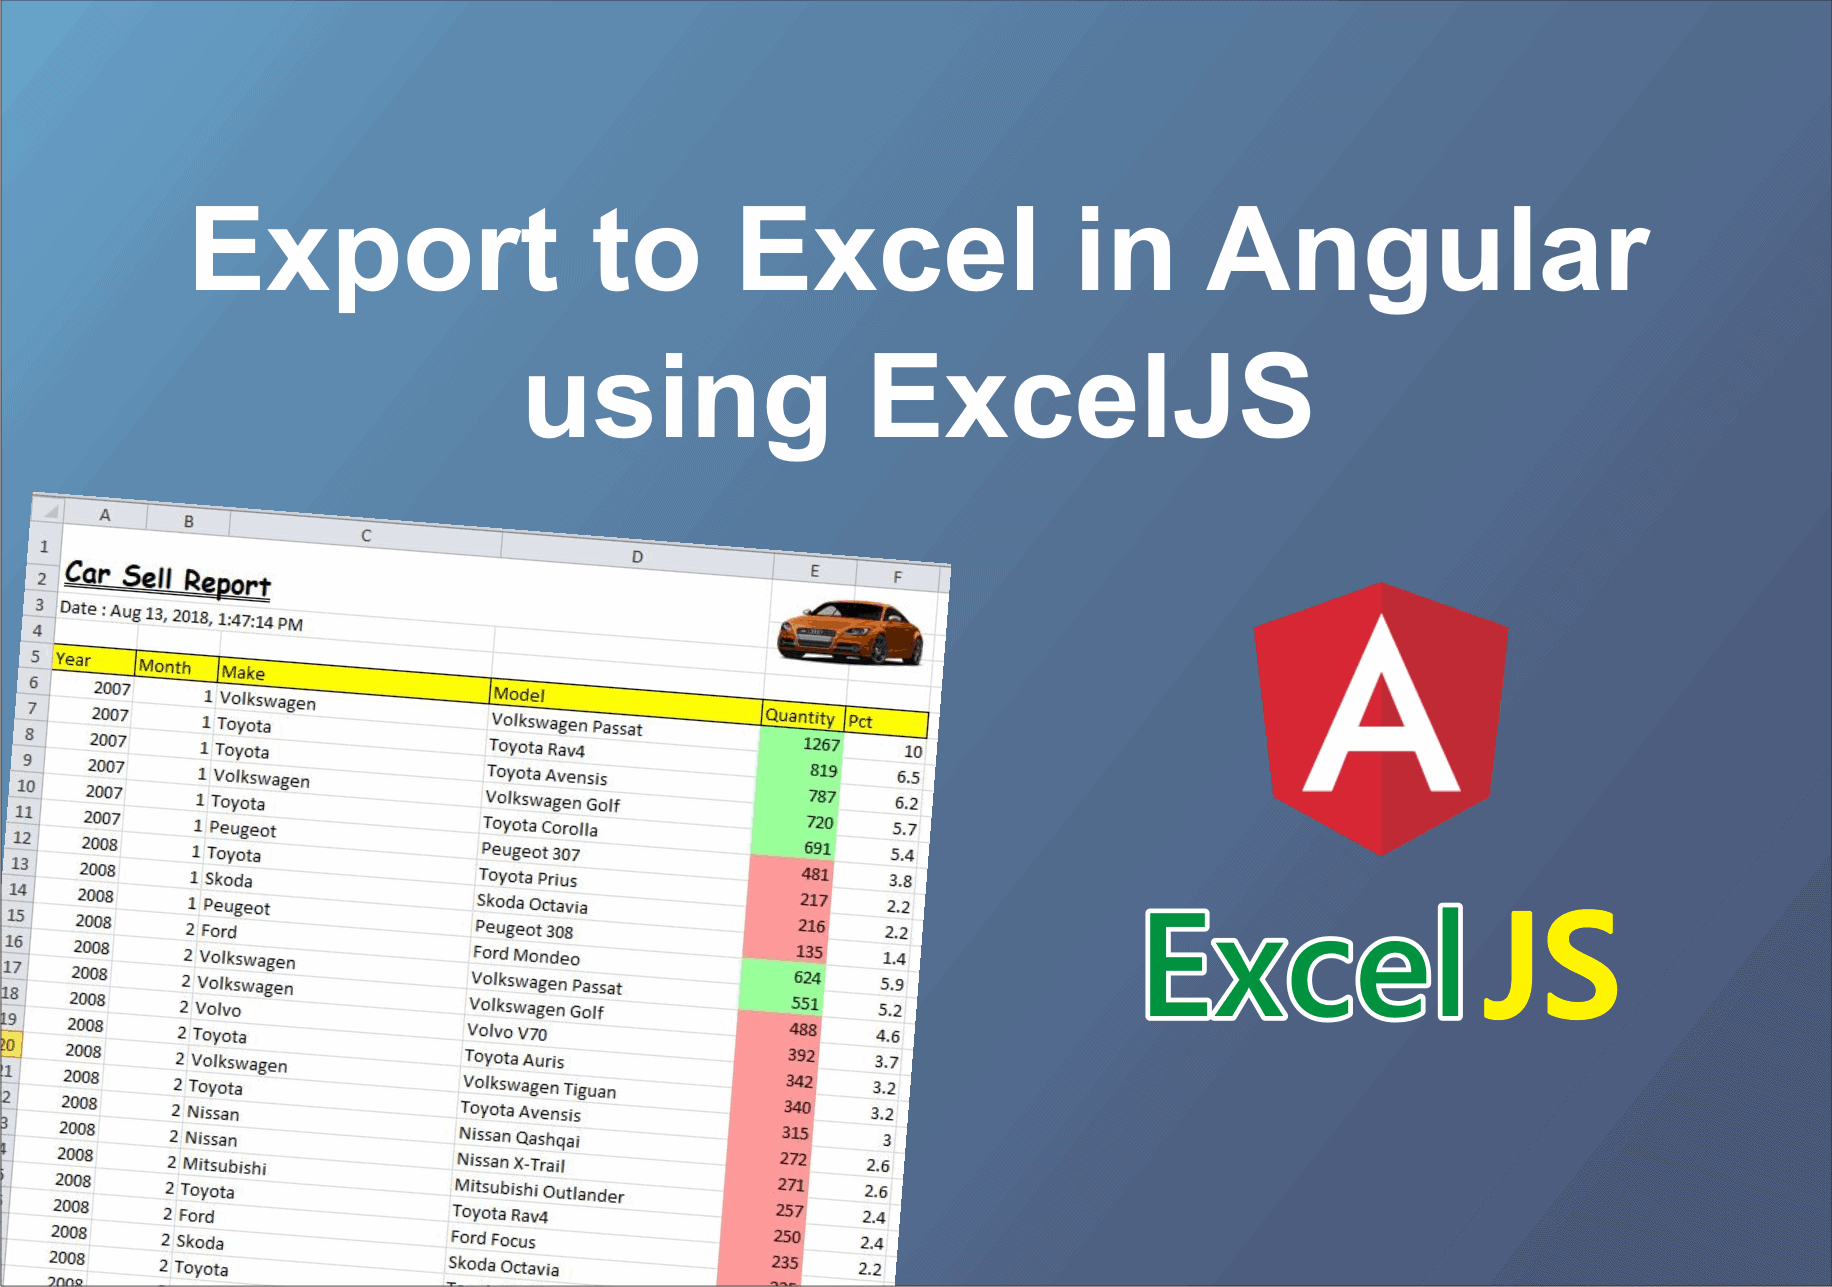 ExcelJS và xuất dữ liệu: Nếu bạn cần xuất dữ liệu từ ứng dụng web của mình để sử dụng bên ngoài, ExcelJS có thể giúp bạn. Sử dụng thư viện này để tạo ra các tệp Excel tùy chỉnh và xuất ra chúng từ dữ liệu trong ứng dụng của bạn một cách dễ dàng và hiệu quả.